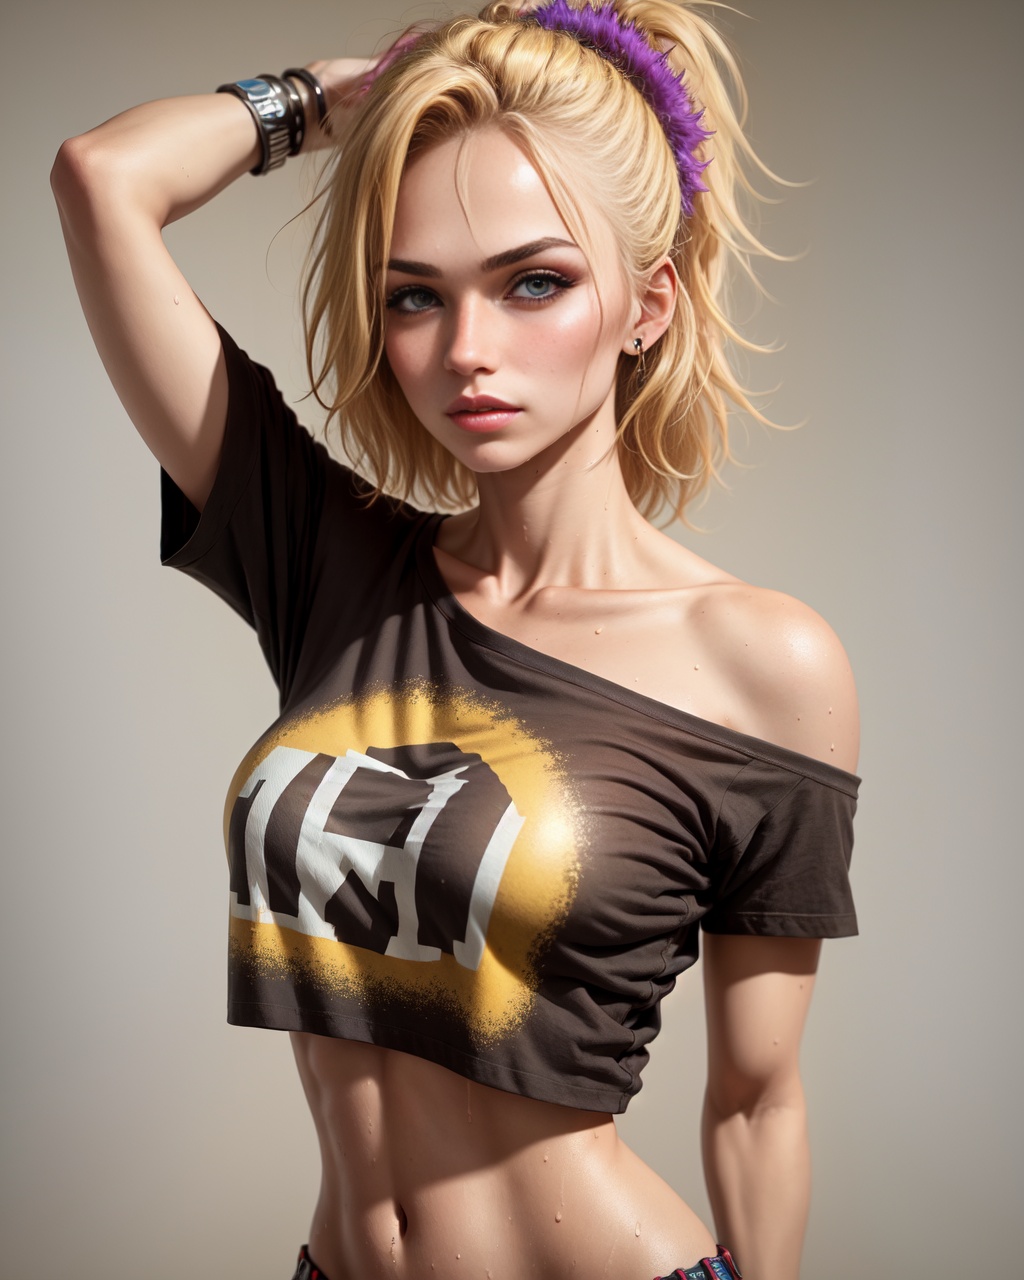 (1girl), medium breasts, tan, dewy skin, sweaty skin, wavy blonde hair, punk tshirt, punk girl